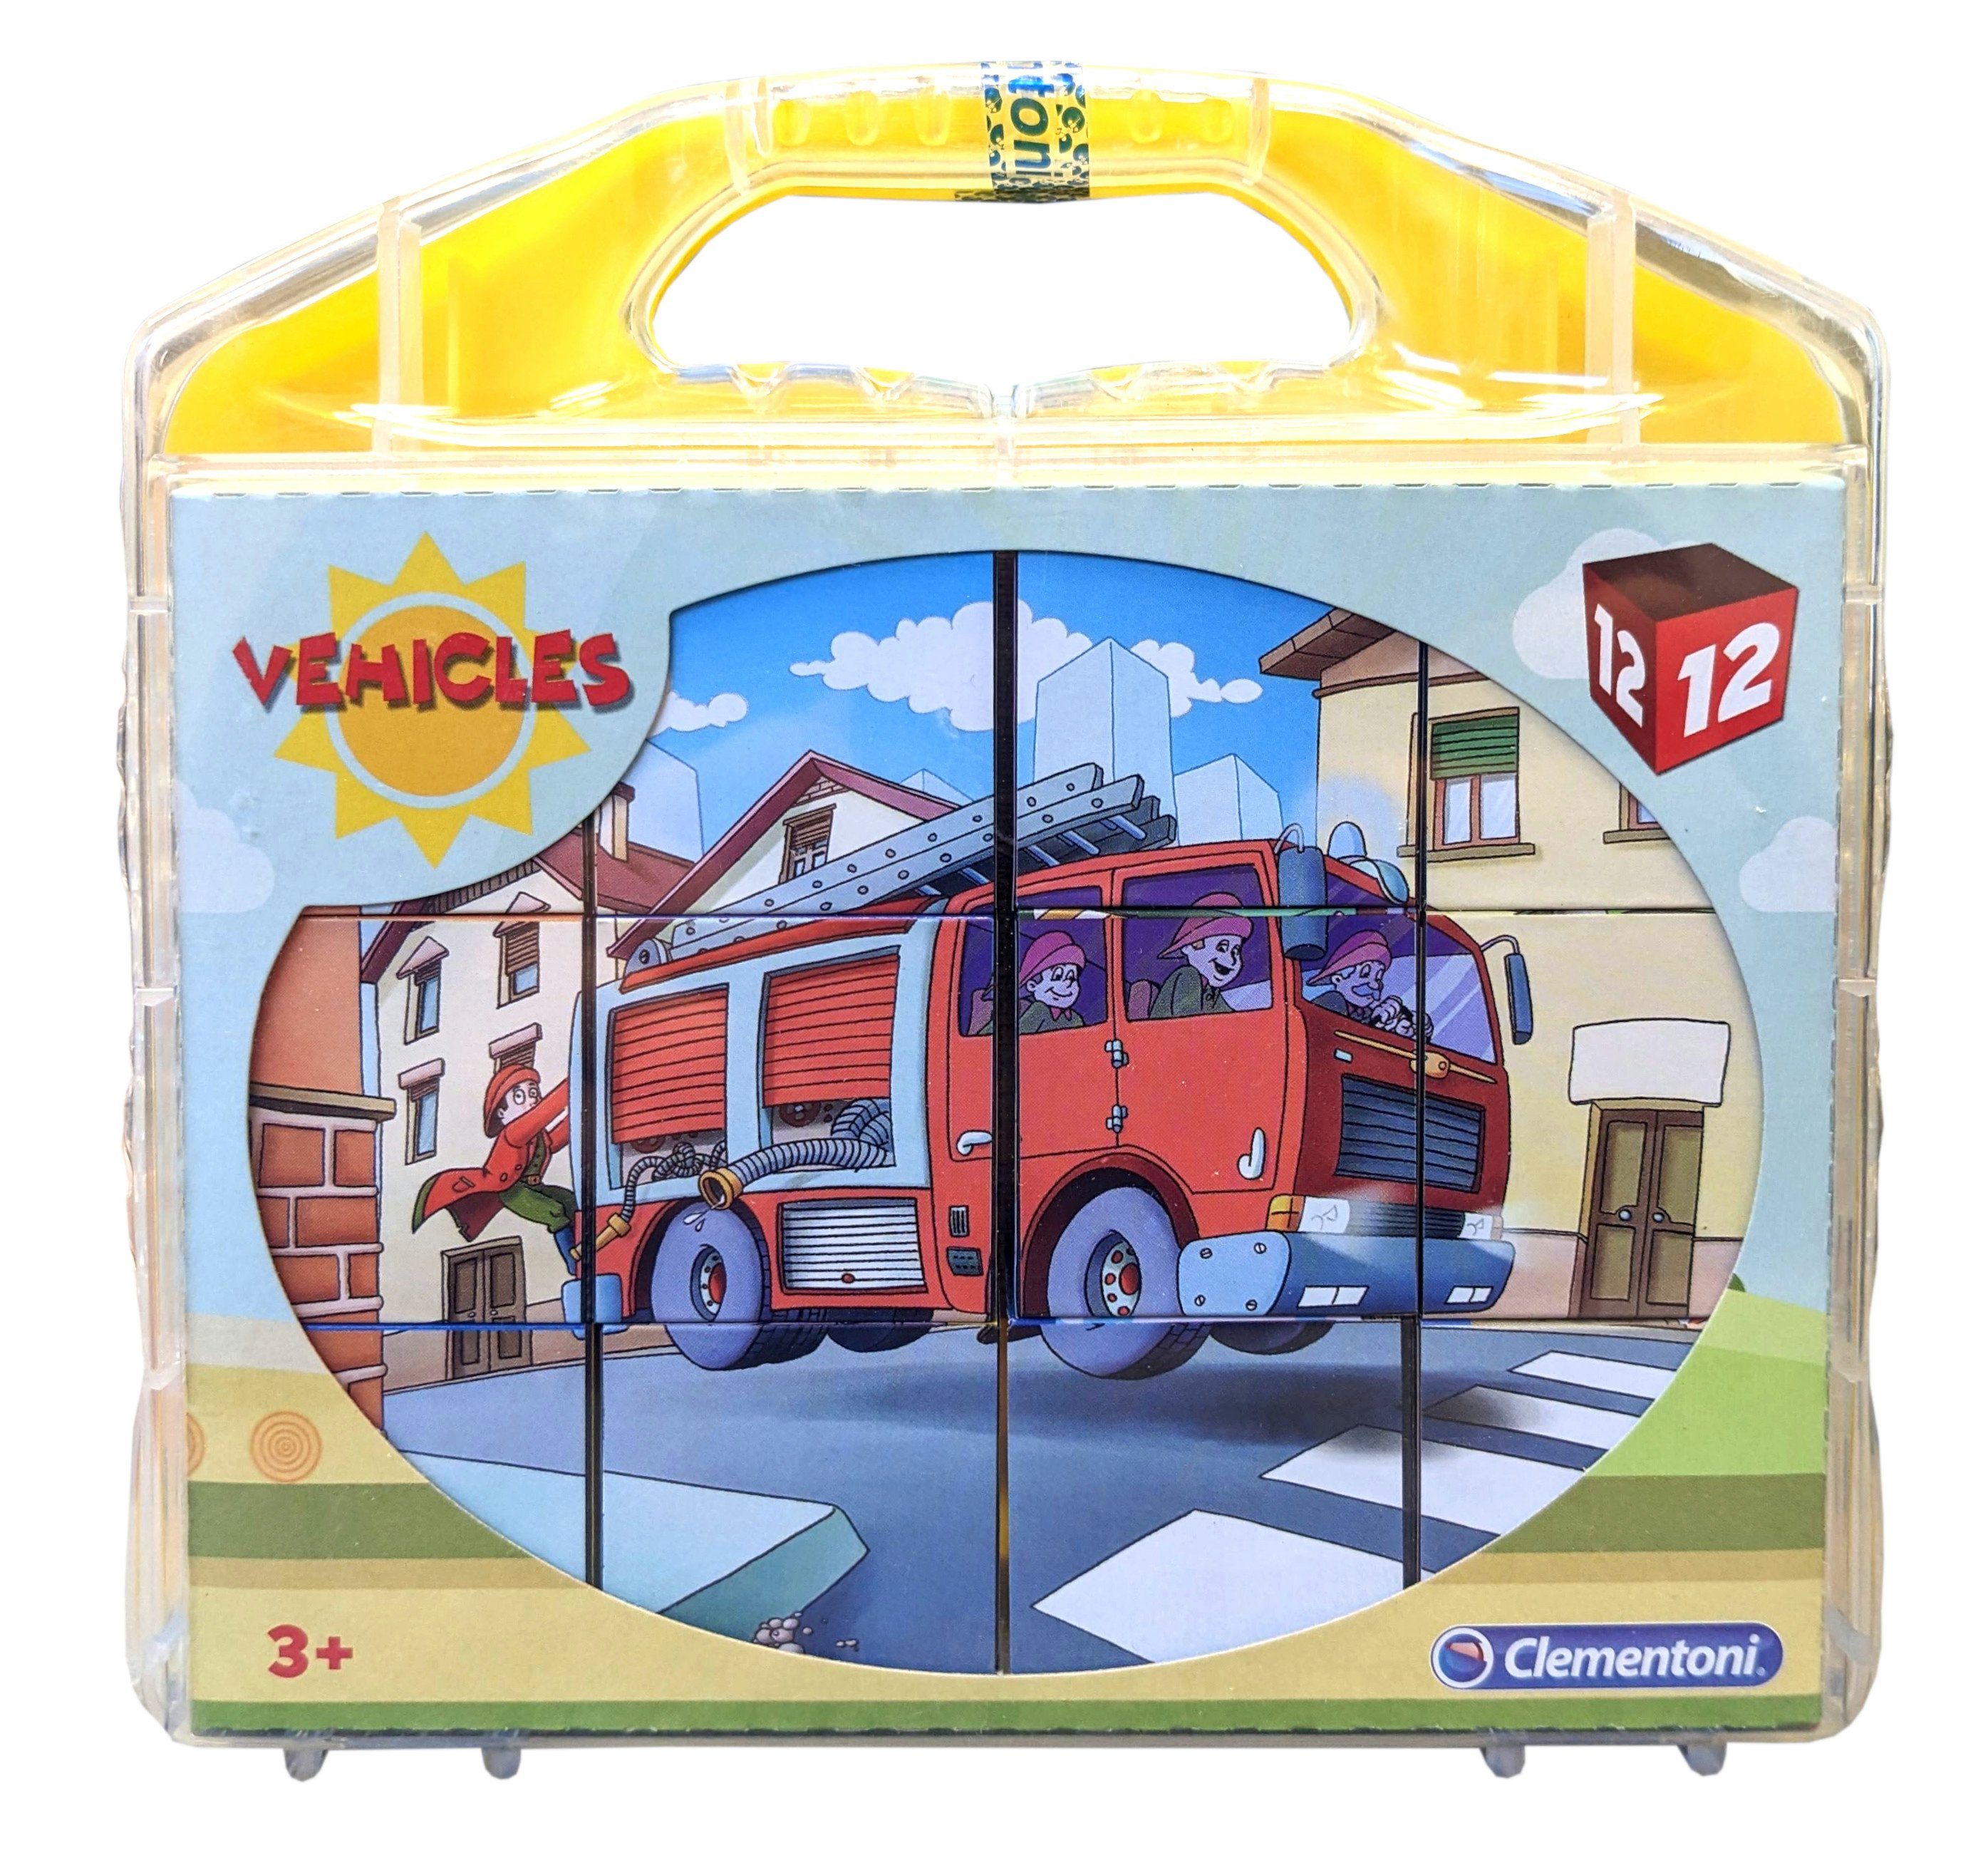 Clementoni® Puzzle Vehicles Würfelpuzzle im Koffer (12 Teile) Fahrzeuge, 12 Puzzleteile